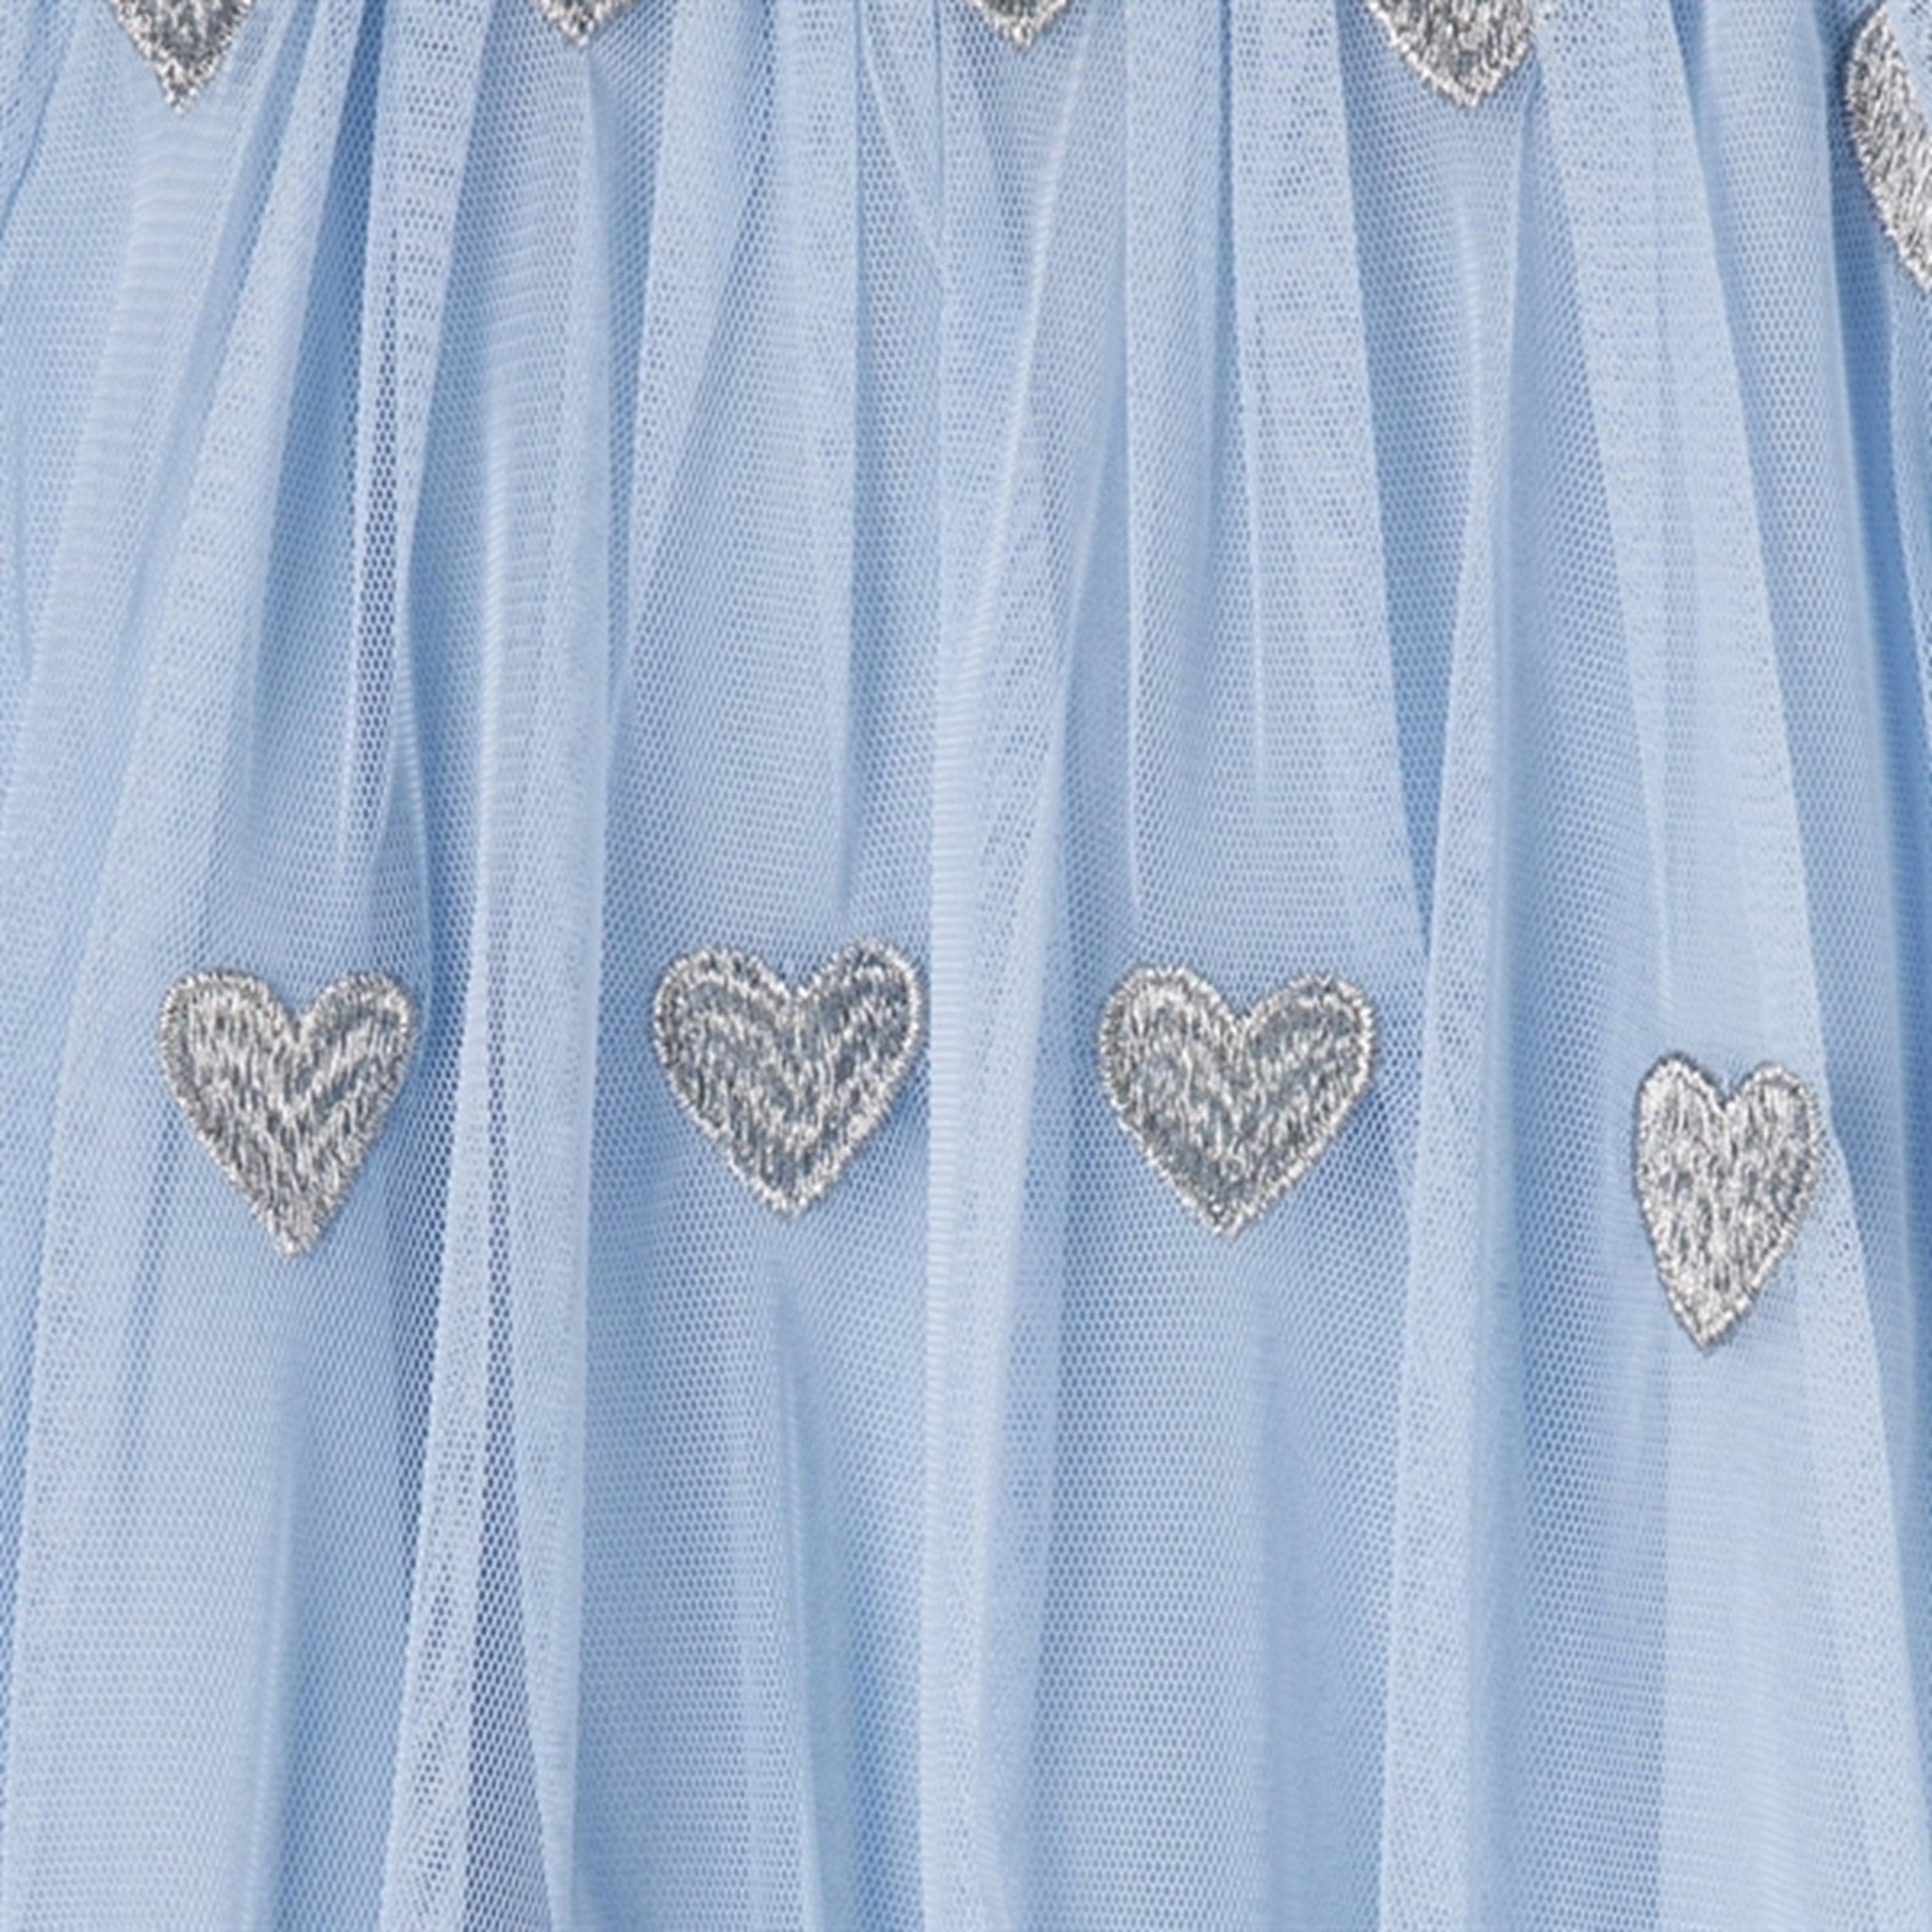 Stella McCartney Celeste/Embroidery Dress 2